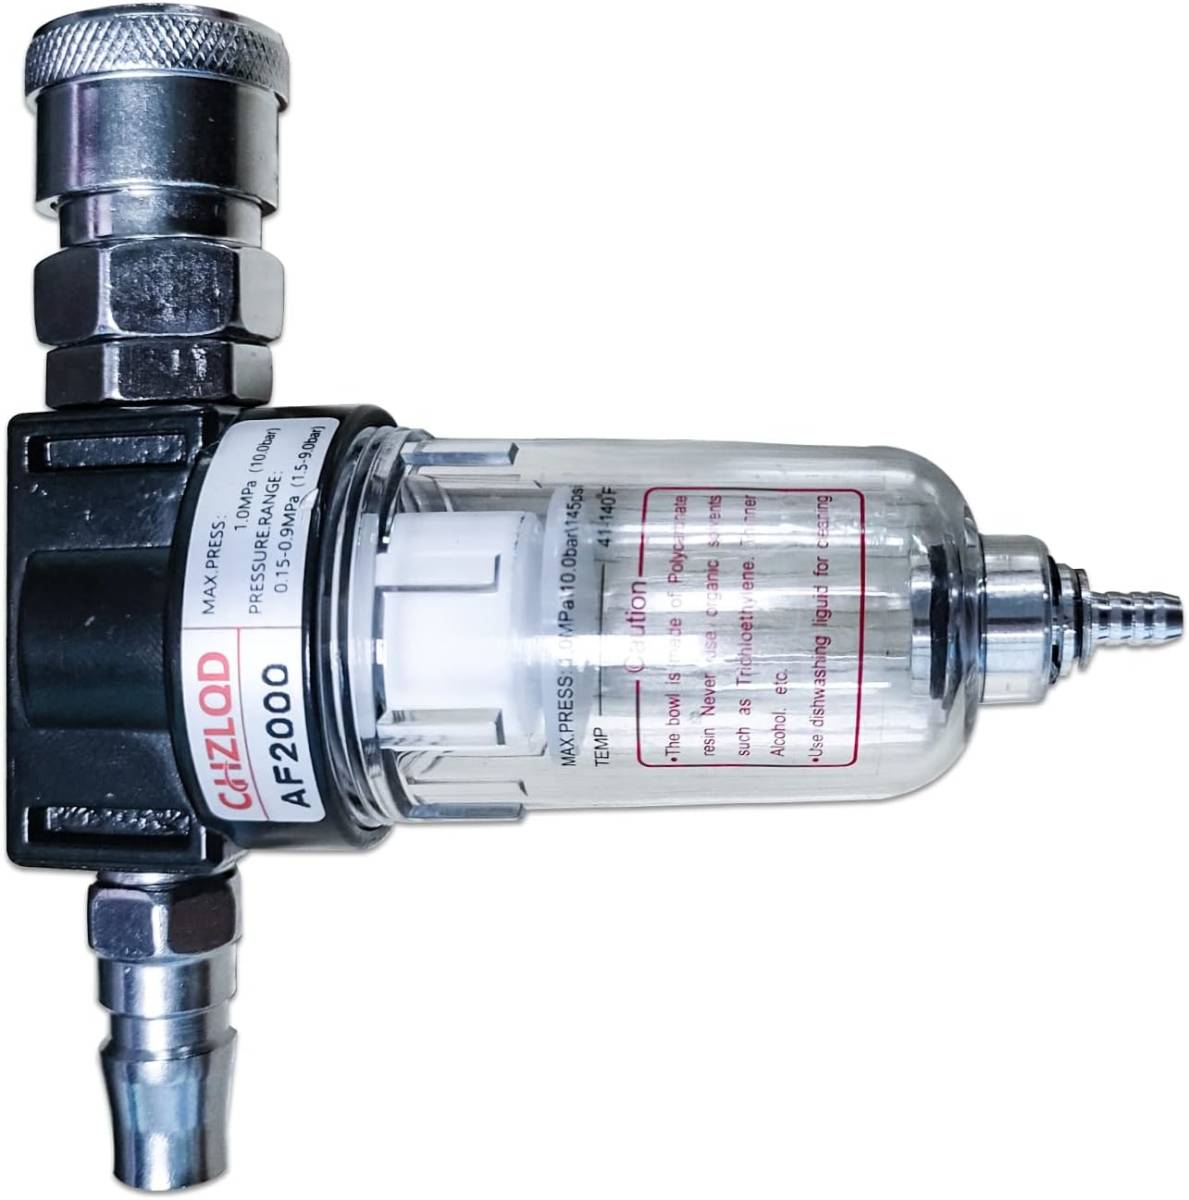  вода сепаратор воздушный компрессор воздушный регулятор масло вода разделение фильтр воздушный фильтр пустой атмосферное давление tool AF2000